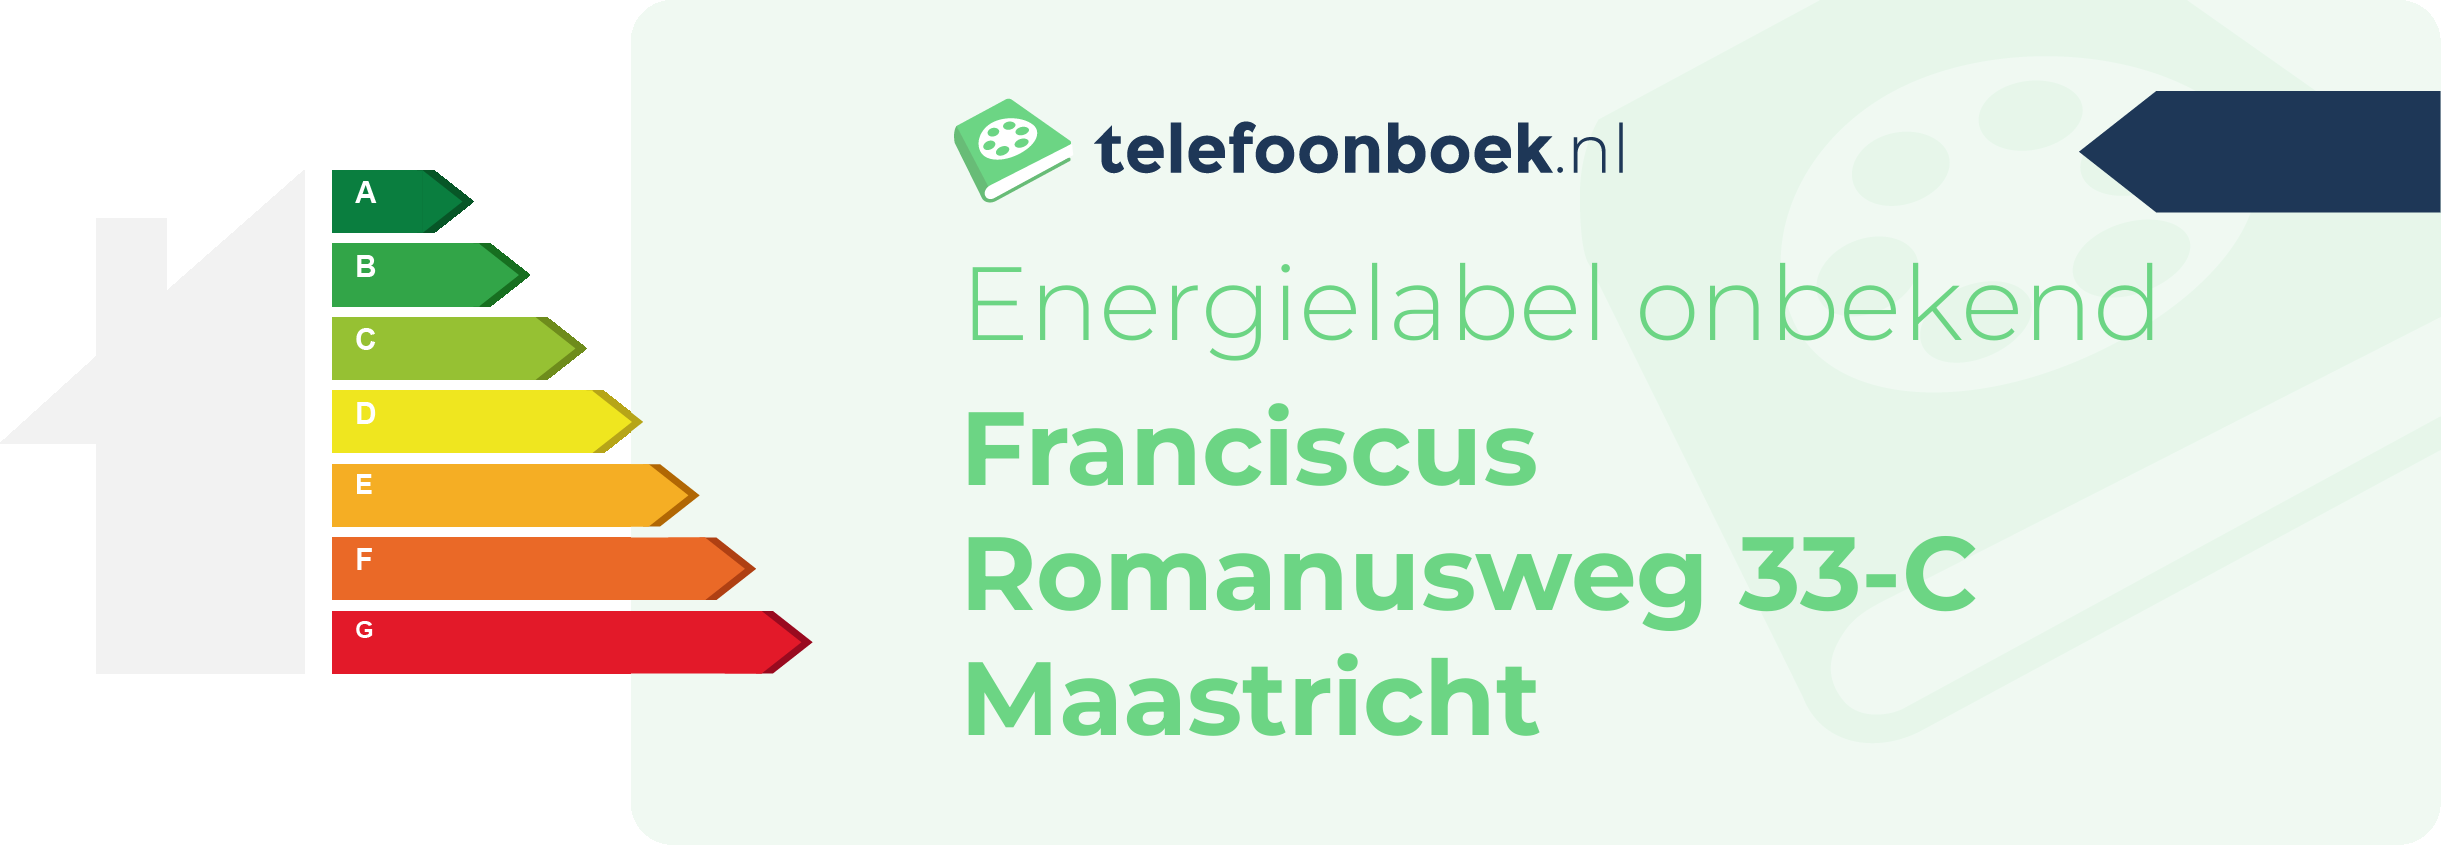 Energielabel Franciscus Romanusweg 33-C Maastricht